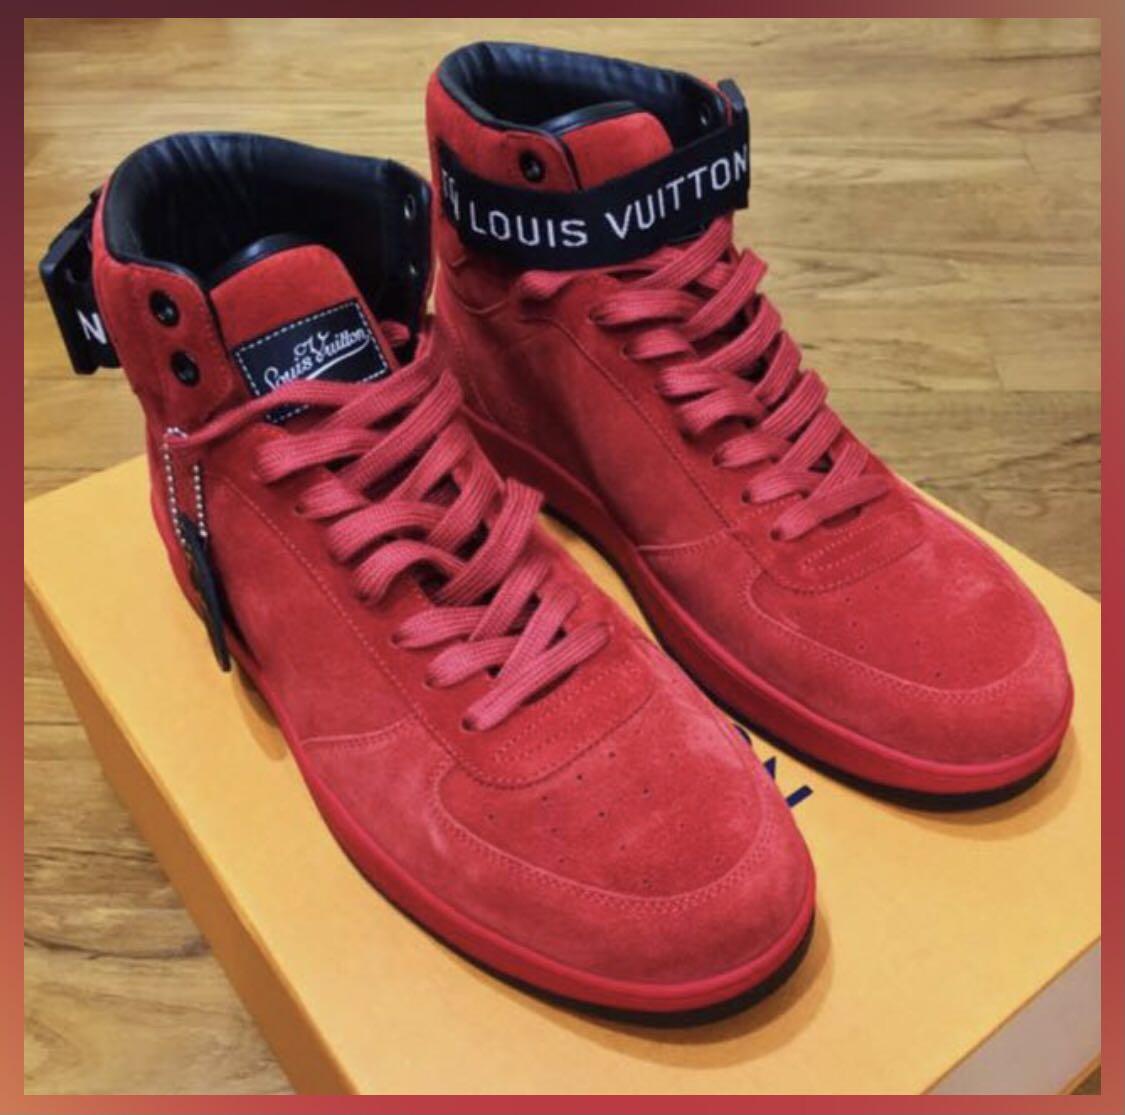 Louis Vuitton - Rivoli Sneakers Trainers - Black - Men - Size: 08 - Luxury